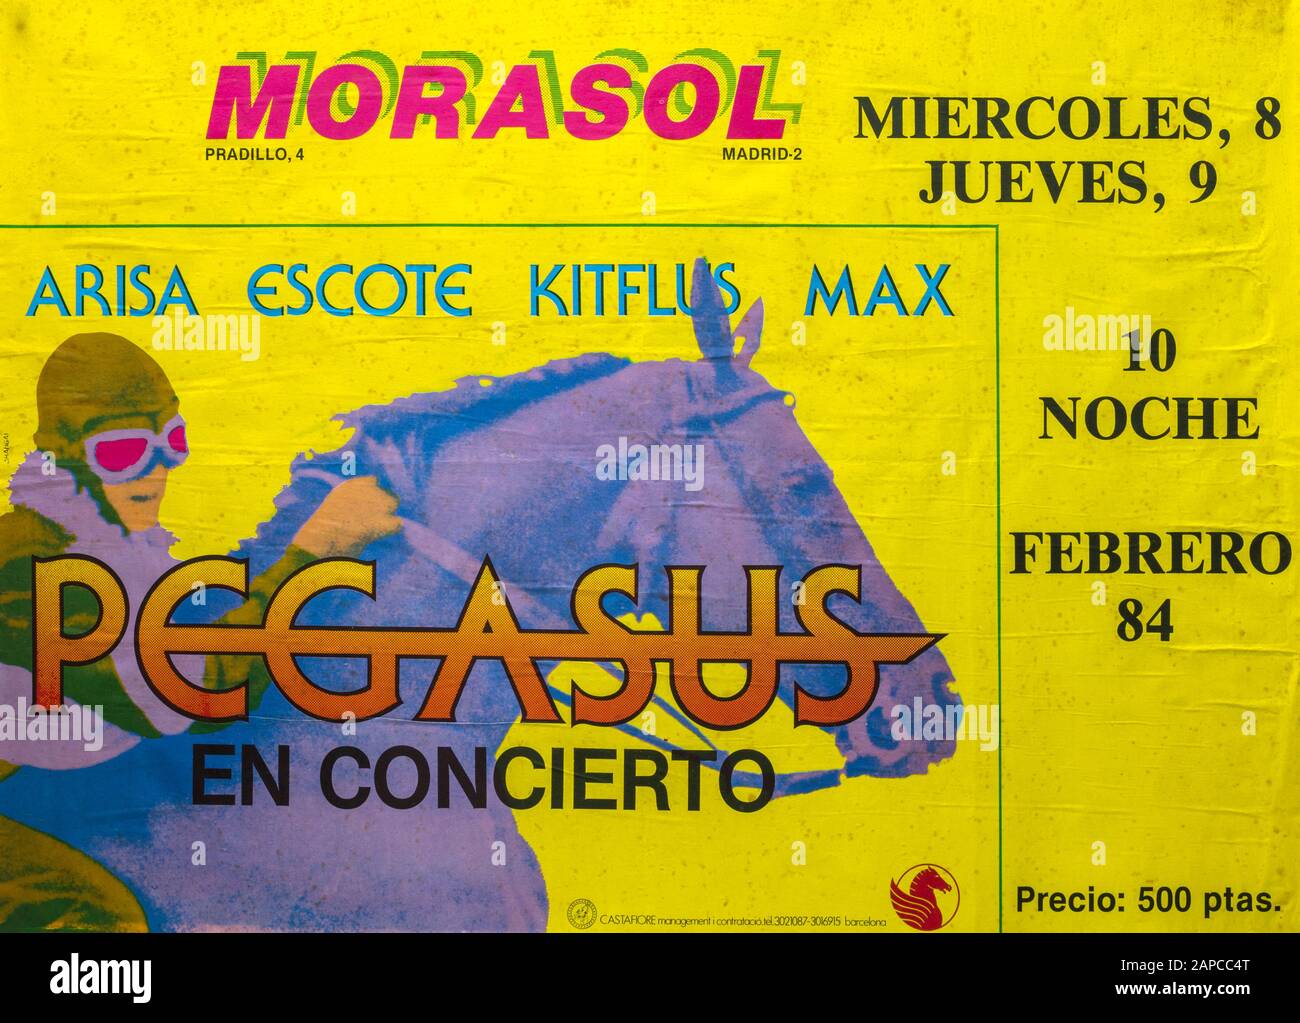 Pegasus en concierto, Sala Morasol, Madrid 1982, manifesto del concerto musicale Foto Stock